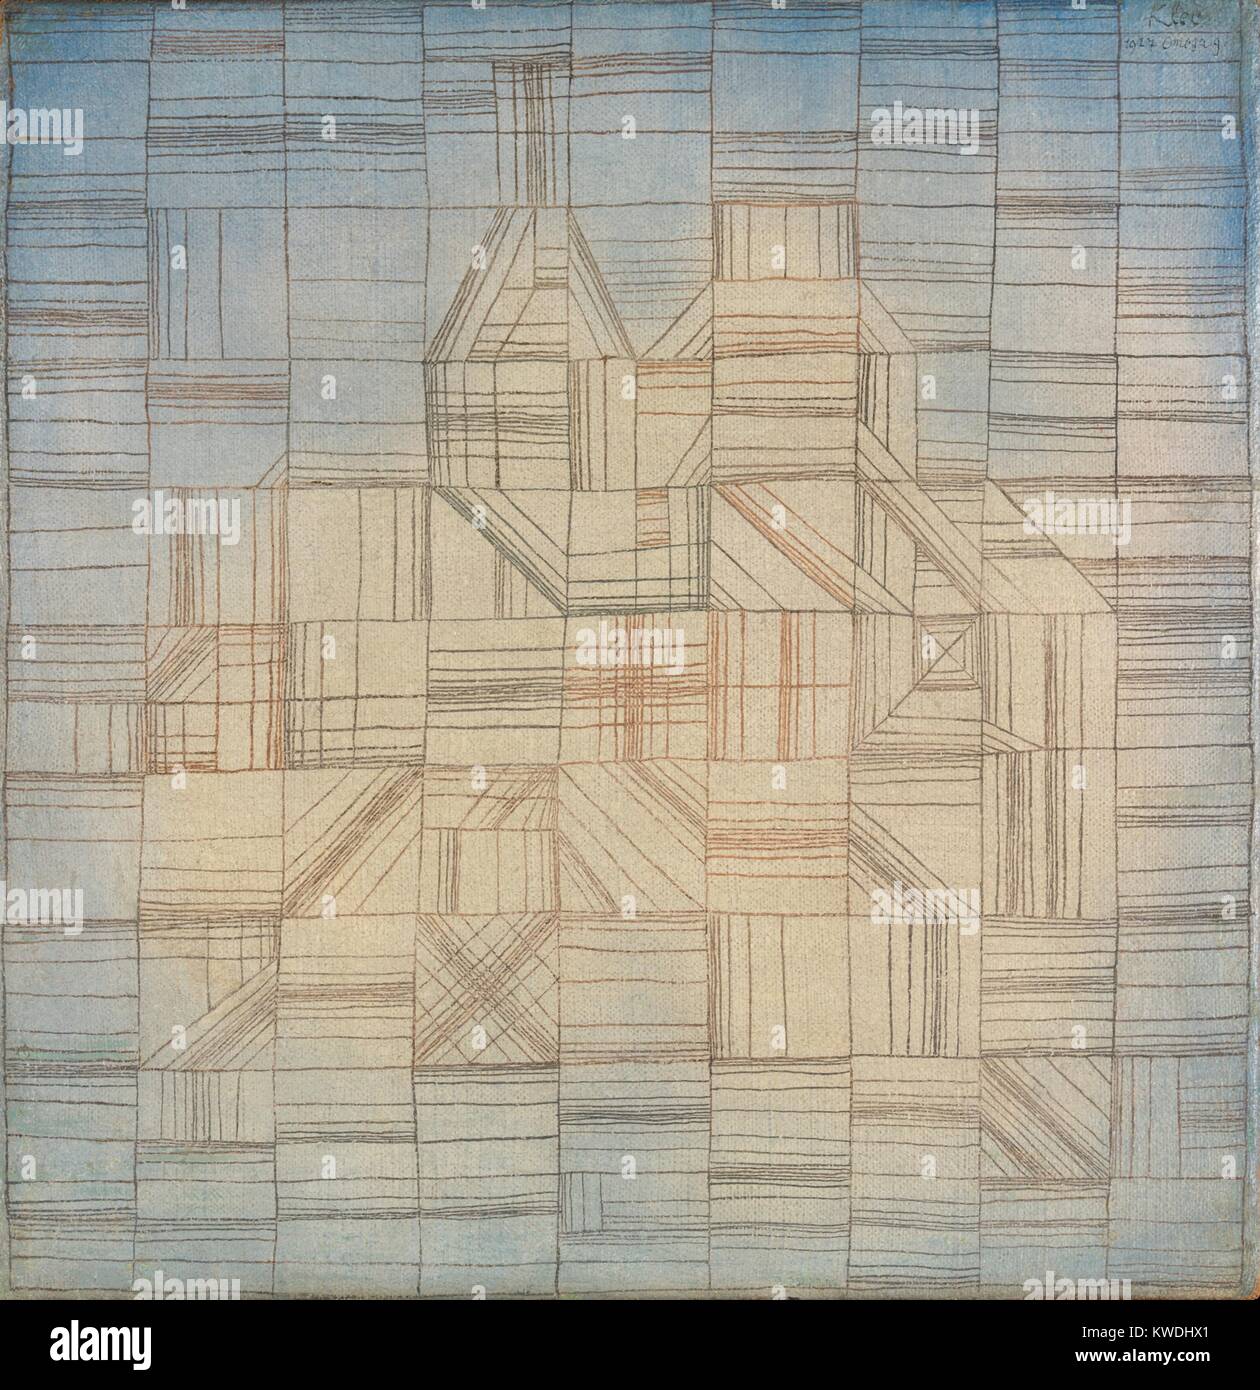 Variationen (ROGRESSIVE MOTIF), von Paul Klee, 1926, Schweizer Malerei, Öl, Aquarell auf Leinwand. Die Leinwand ist Tönen Elfenbein in der Mitte und blau an den Ecken und Kanten. Über dies, Linien erzeugen eine Hand gezeichnet Raster, in dem er unterschiedliche lineare Kombinationen (BSLOC 2017 7 66) erstellt Stockfoto